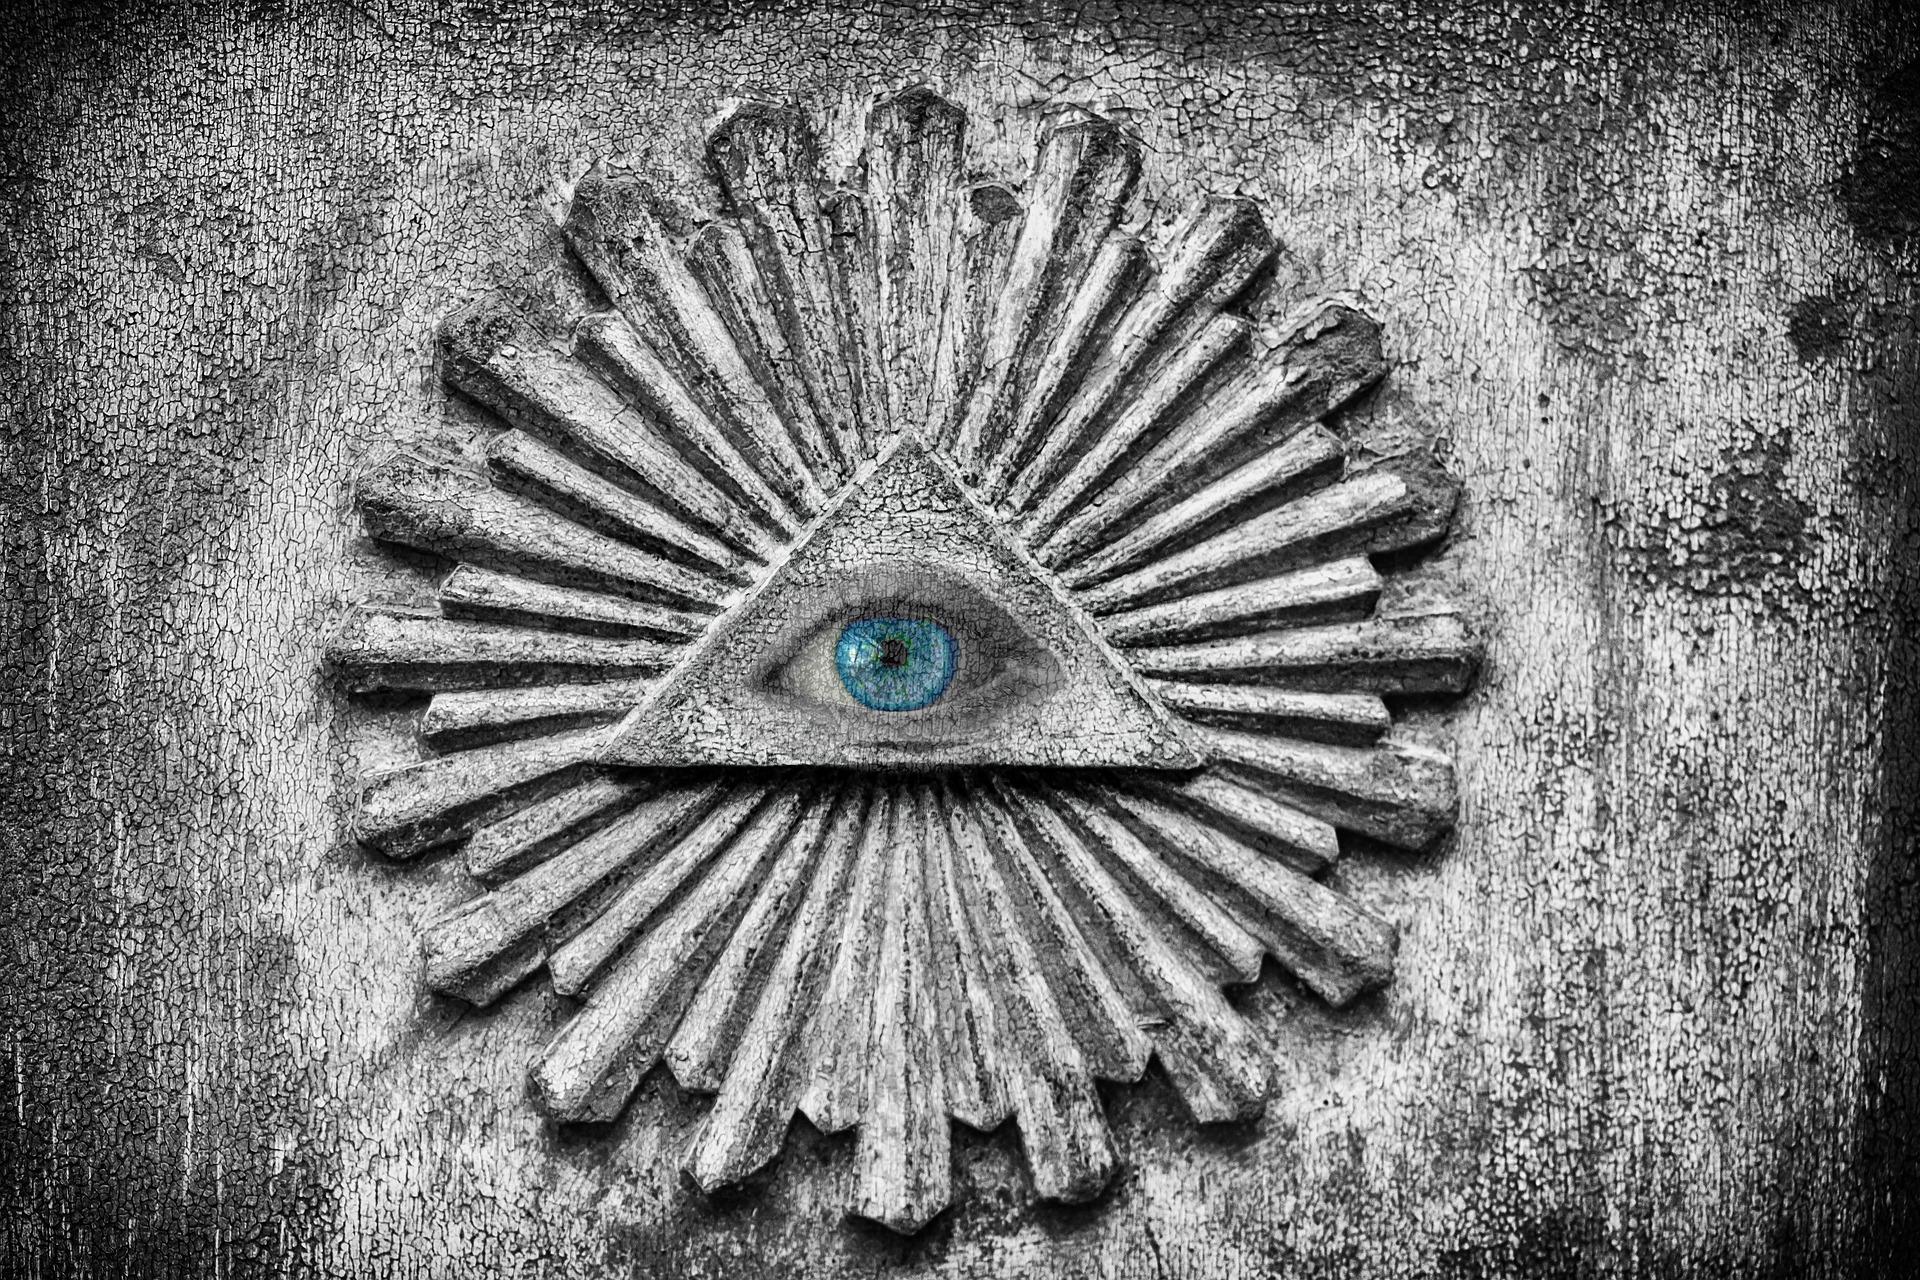 The all-seeing Illuminati eye